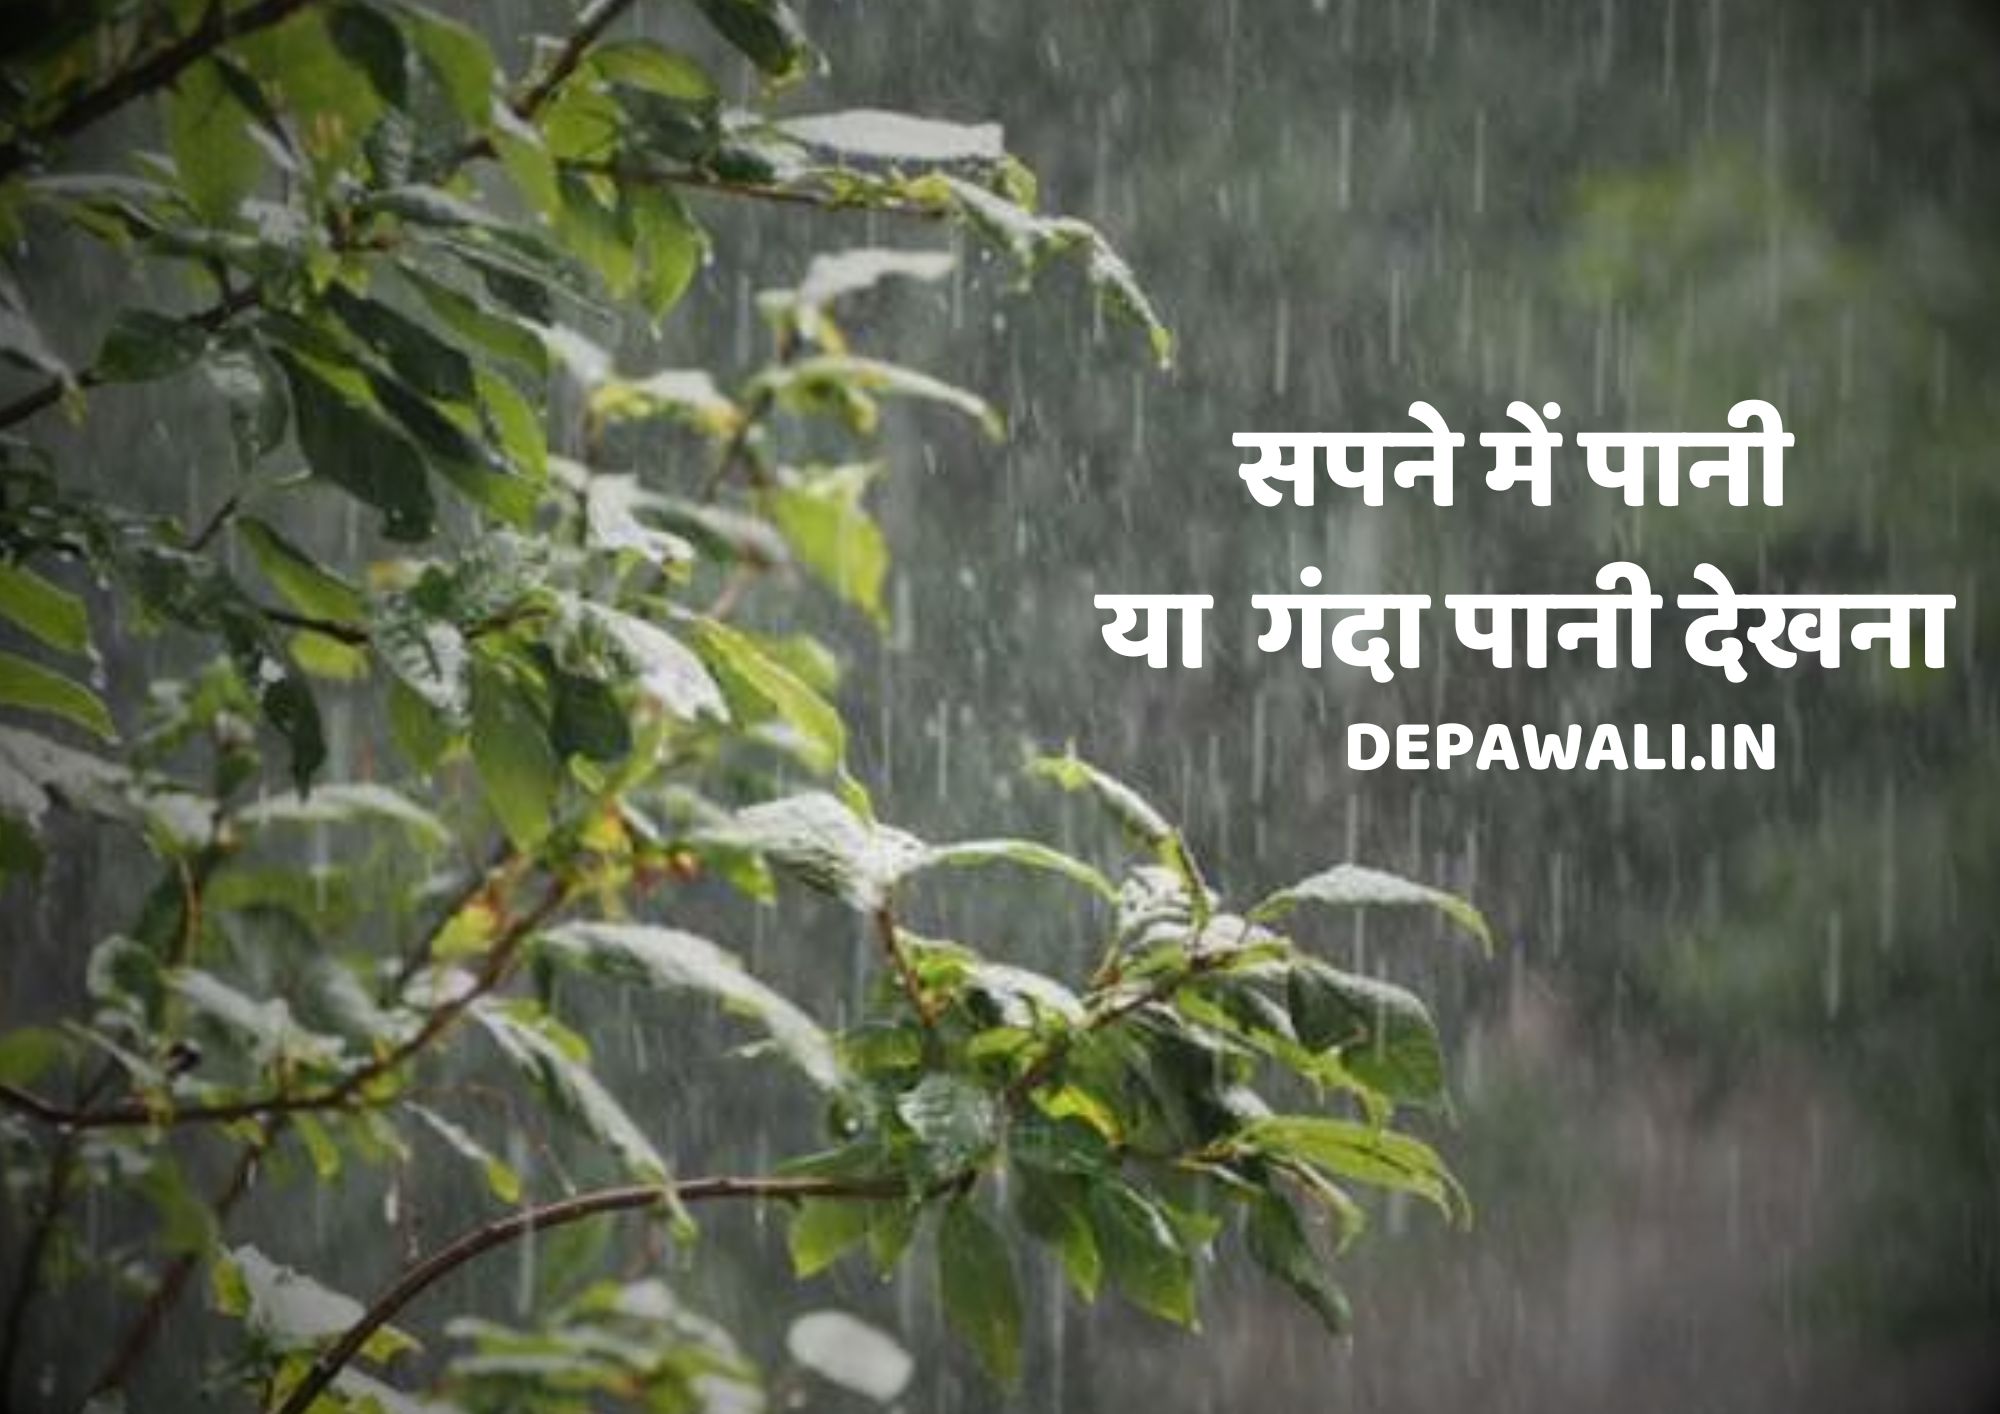 सपने में गंदा पानी देखना, सपने में बारिश का गंदा पानी देखना, शुभ या अशुभ - Sapne Me Ganda Pani Dekhna